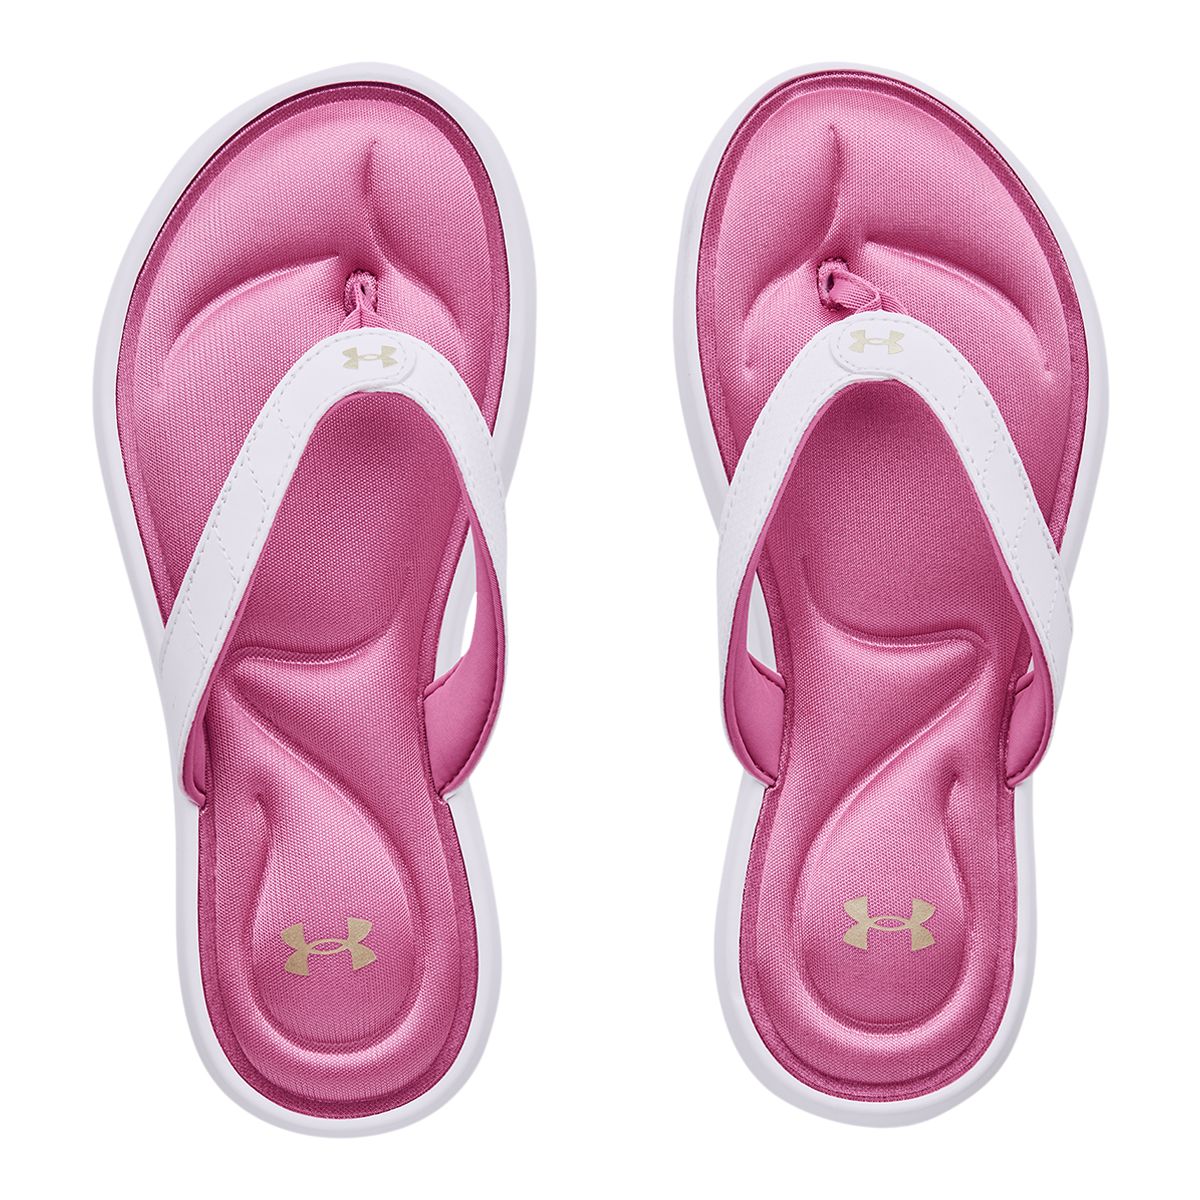 Under Armour Women's Marbella VII Thong Flip Flop/Sandals, Sport